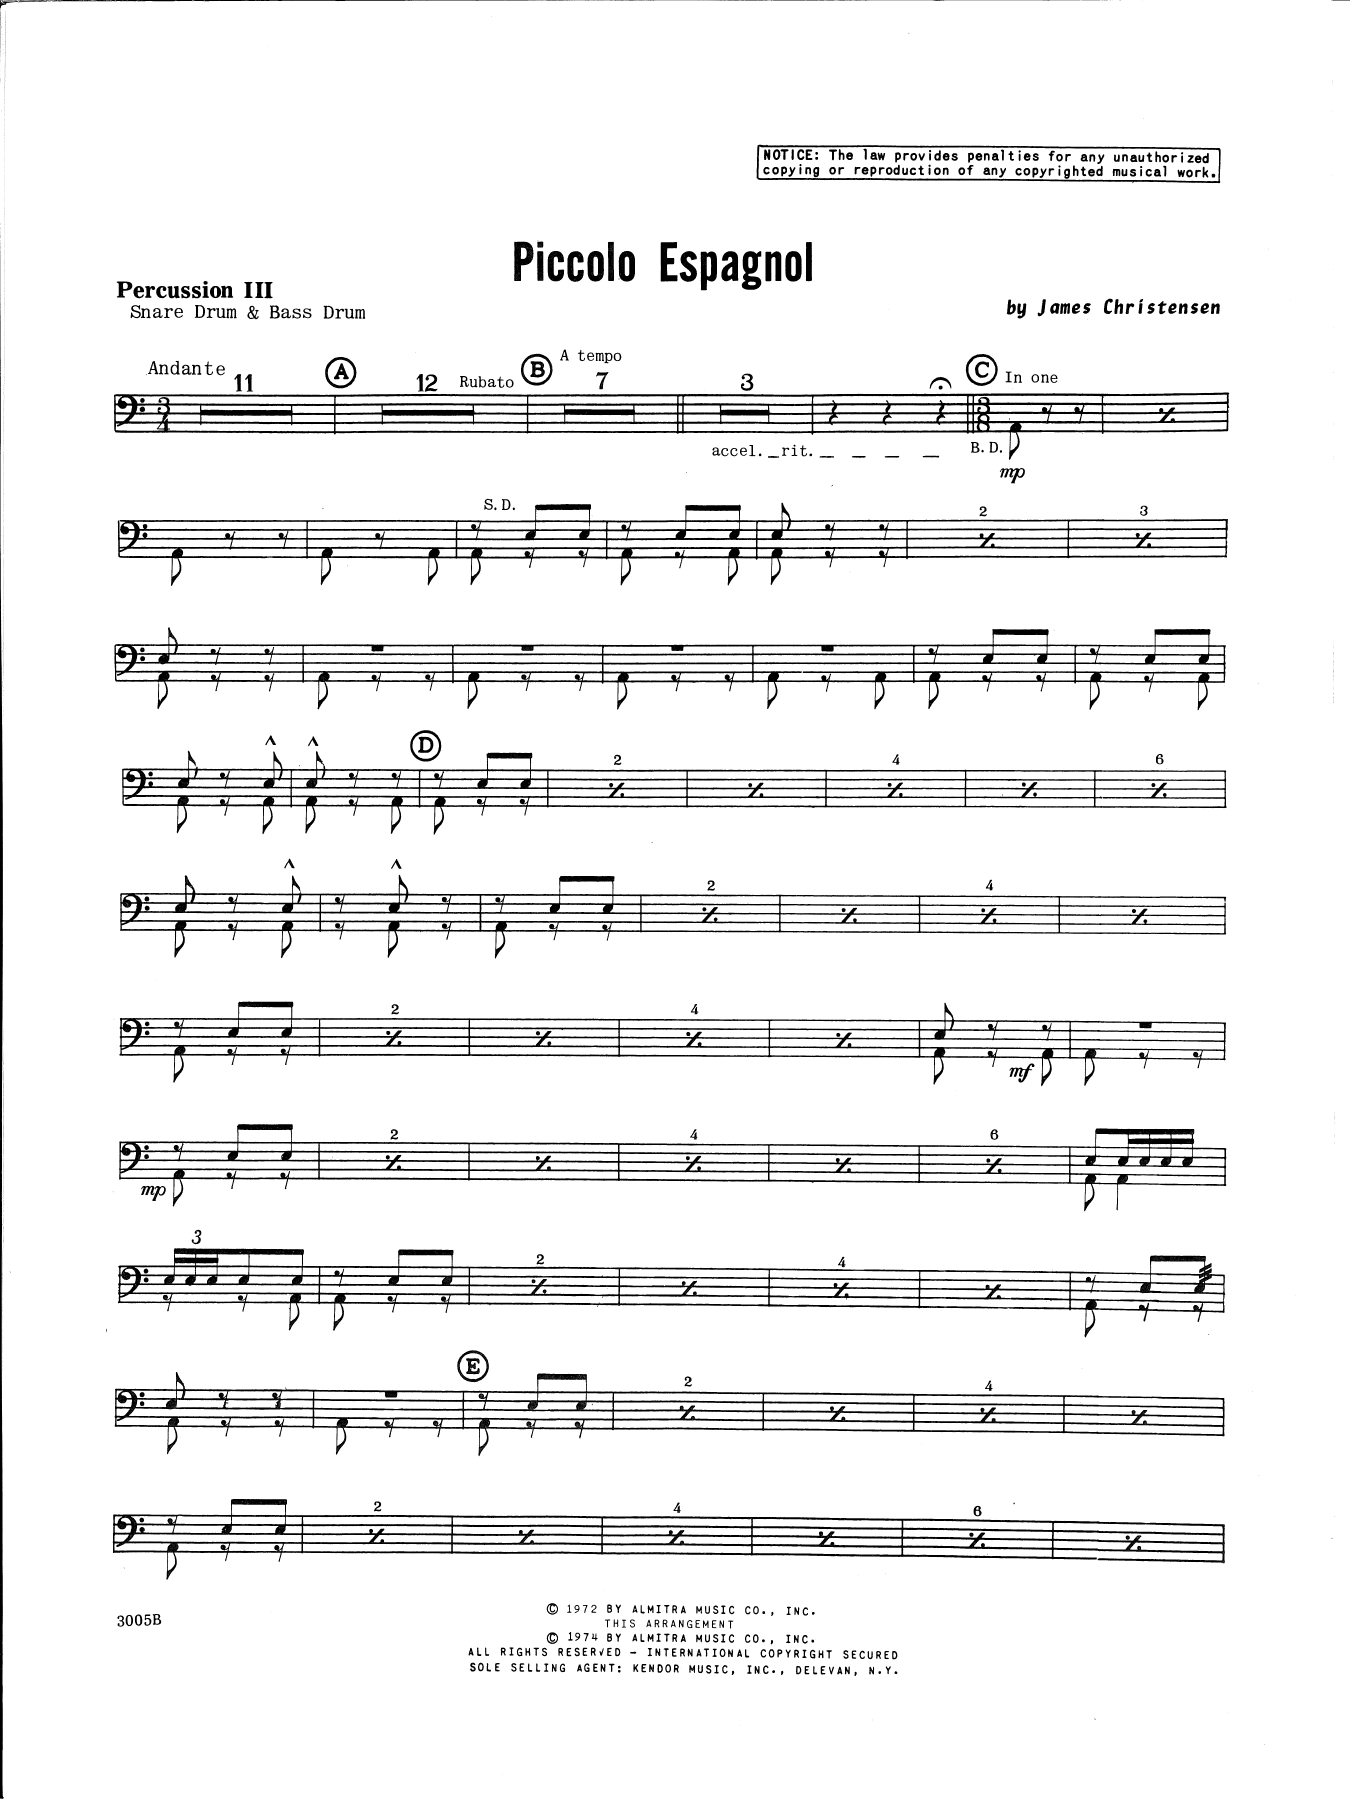 Download James Christensen Piccolo Espagnol - Percussion 3 Sheet Music